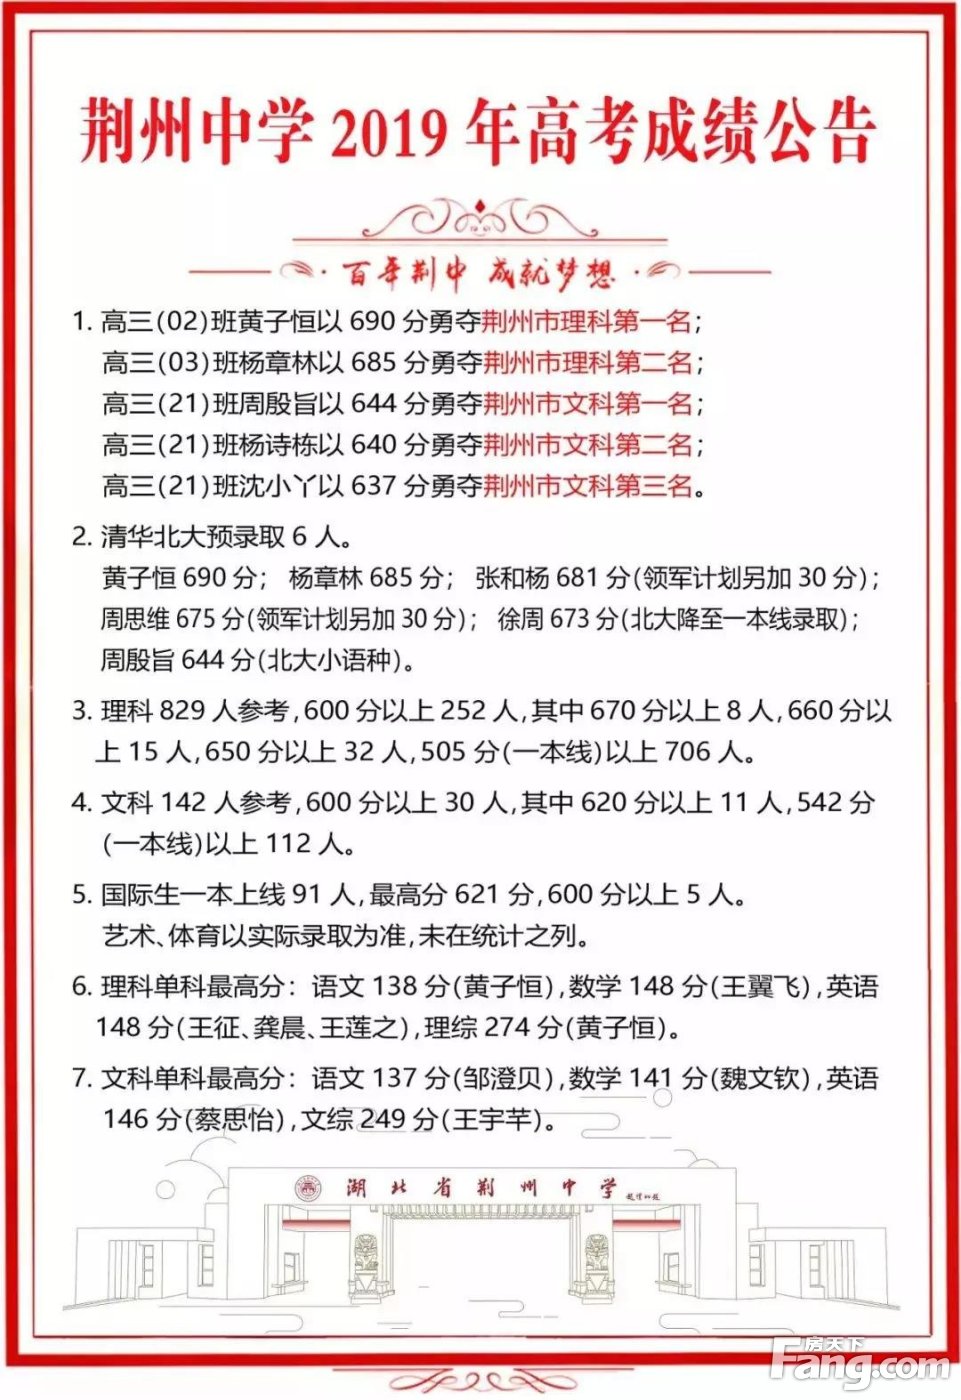 荆州中学2019高考成绩公告